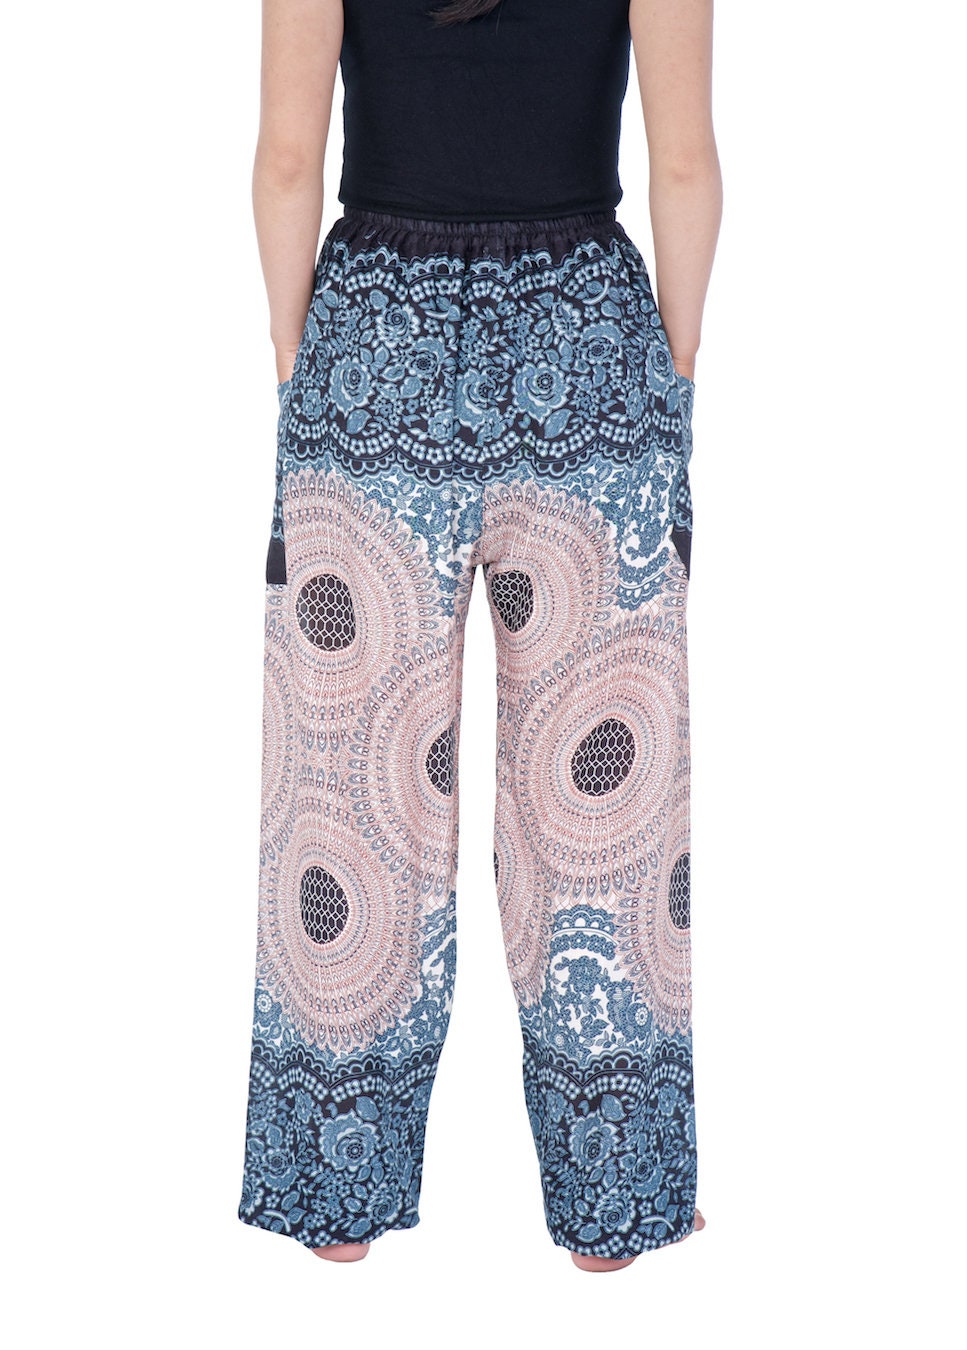 FLOWY HAREM Boho Pants S-XXL Sizes Rose Mandala Print | Etsy